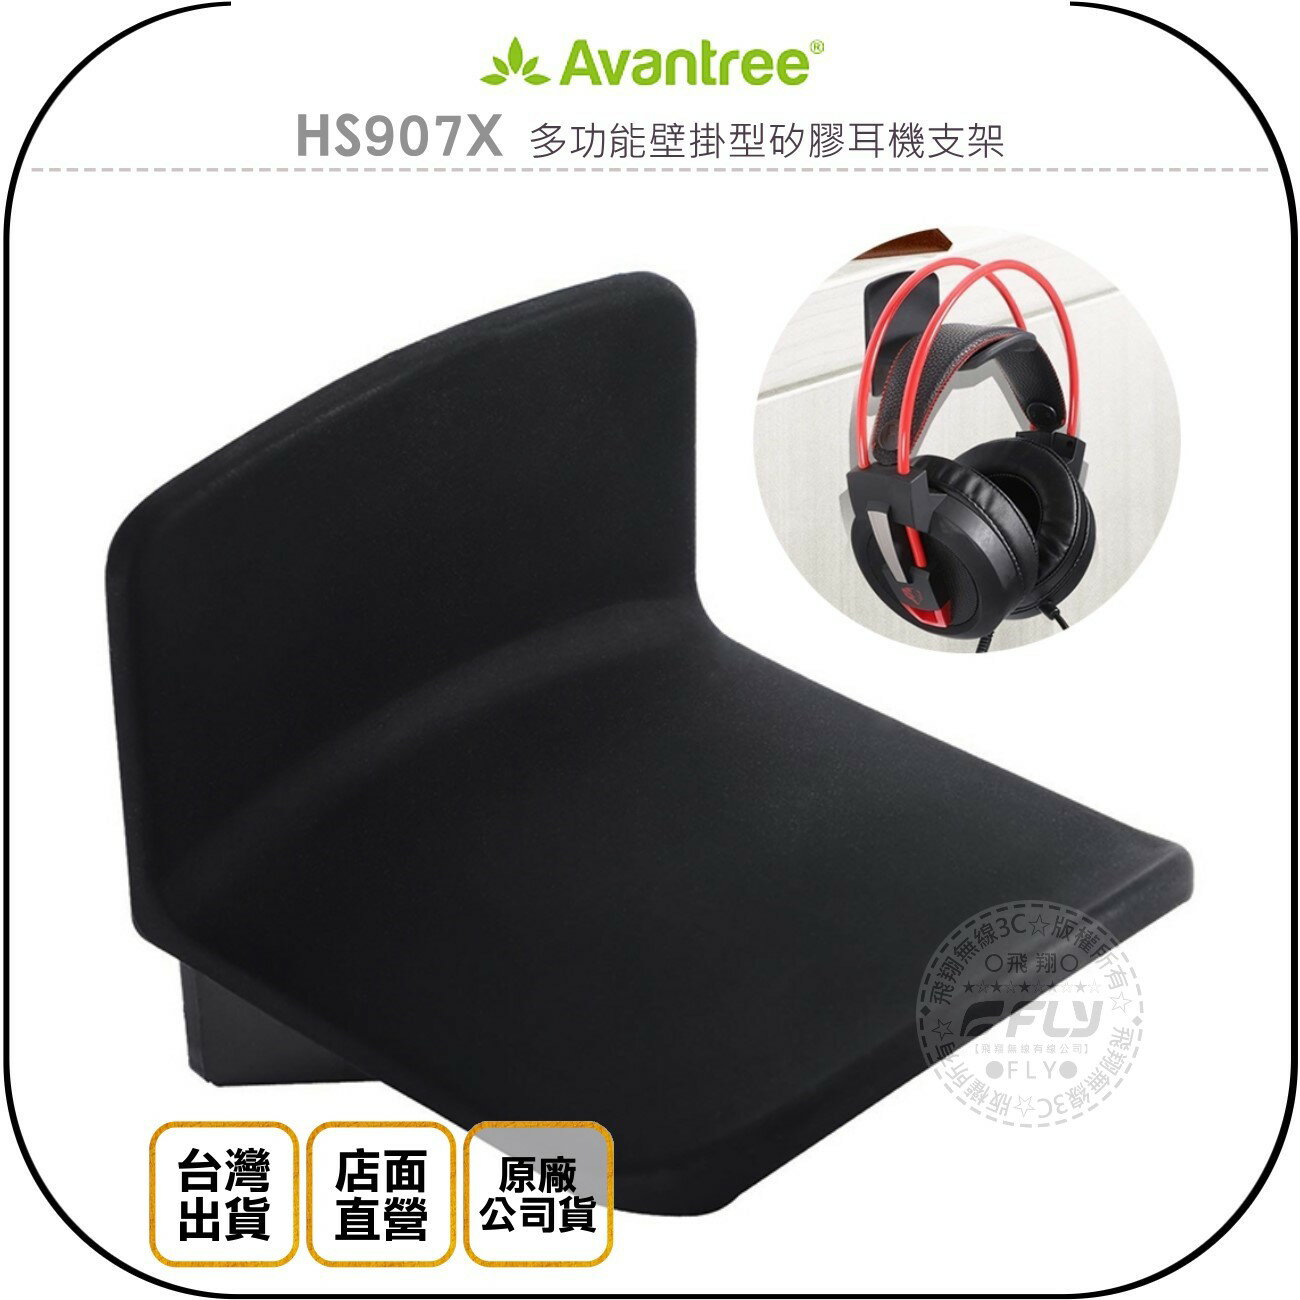 《飛翔無線3C》Avantree HS907X 多功能壁掛型矽膠耳機支架◉公司貨◉收納架◉置物座◉3M黏貼